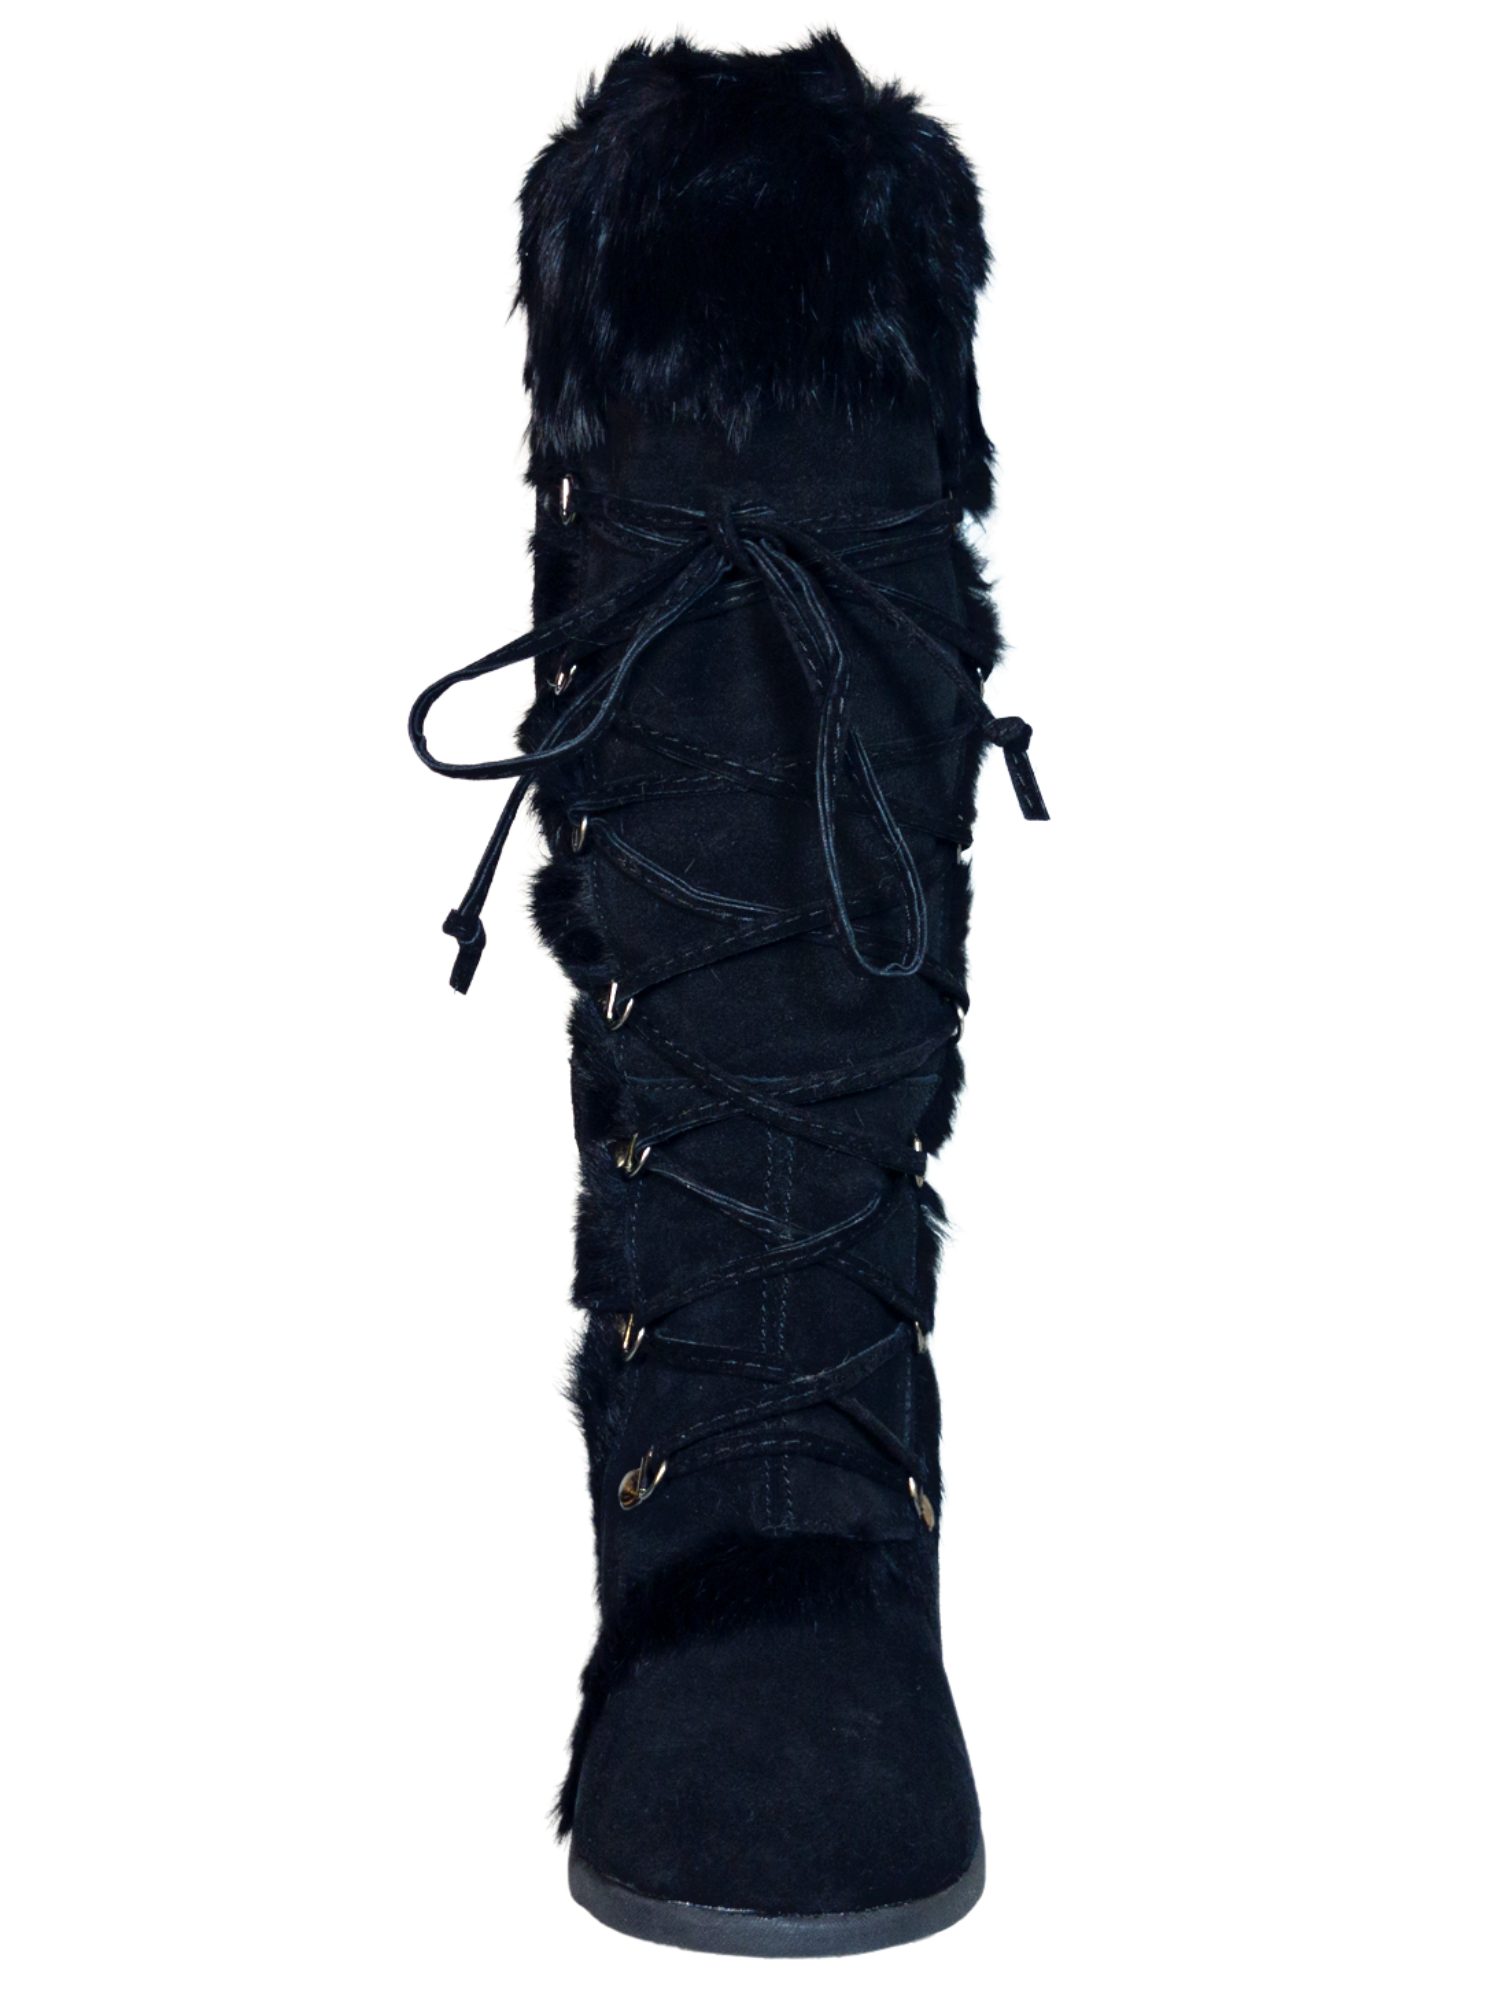 Botas de Invierno de Cuña de Piel Gamuza/Pelo de Conejo para Mujer 'Bearpaw' - ID: 7132 Winter Boots Bearpaw 